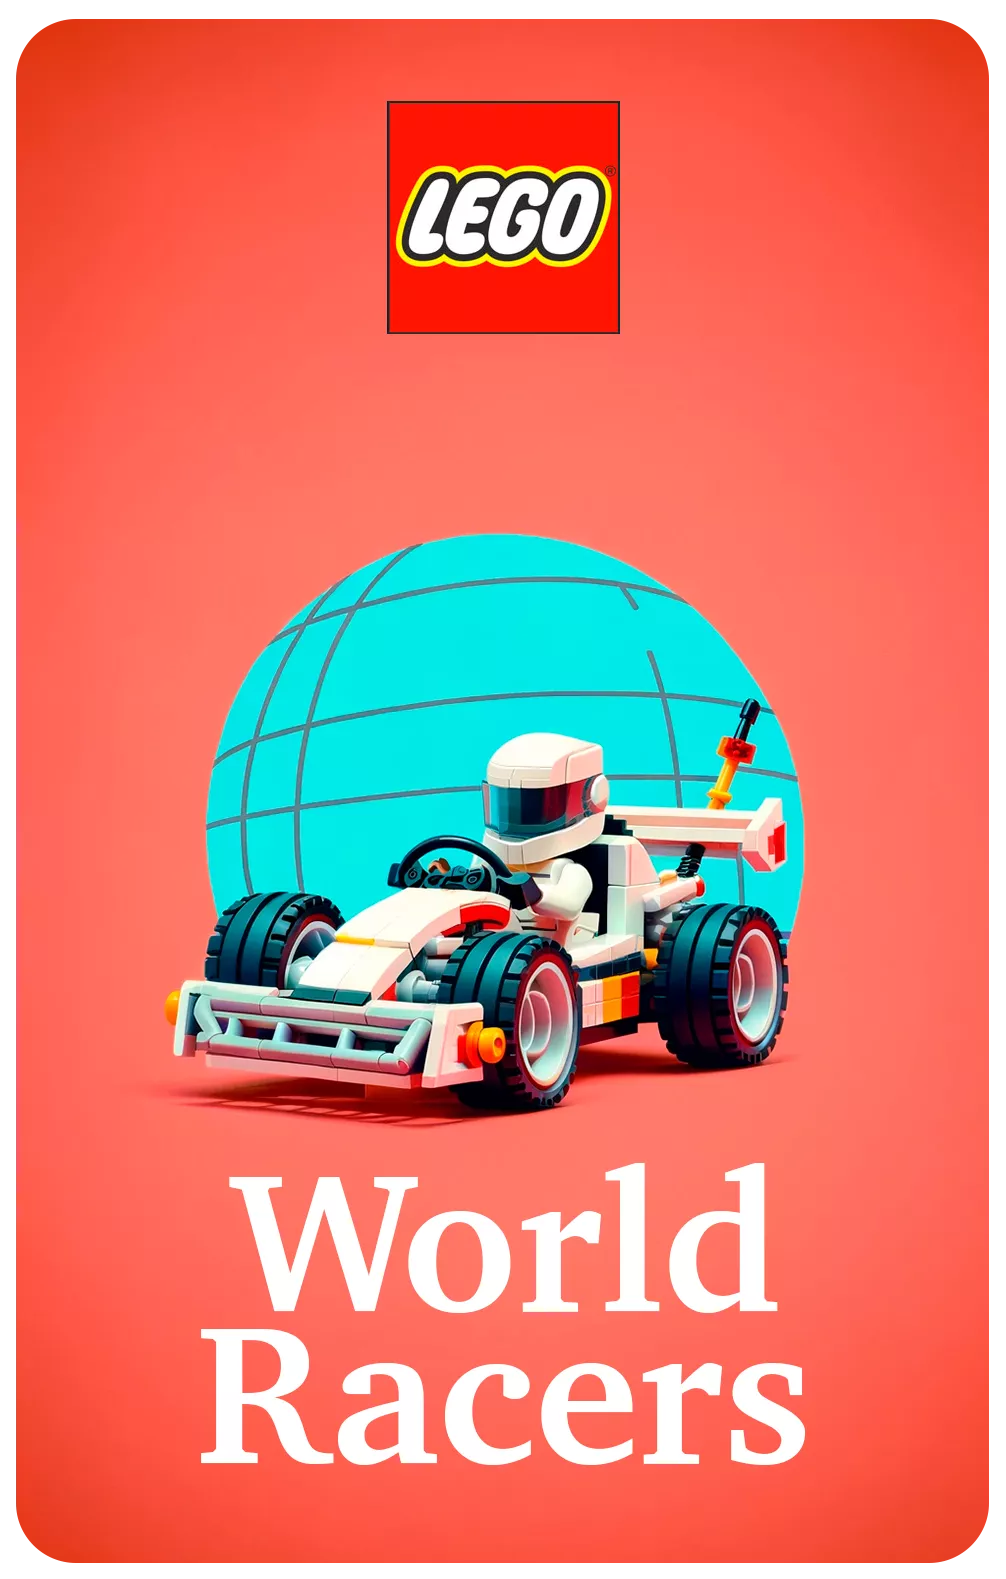 LEGO World Racers